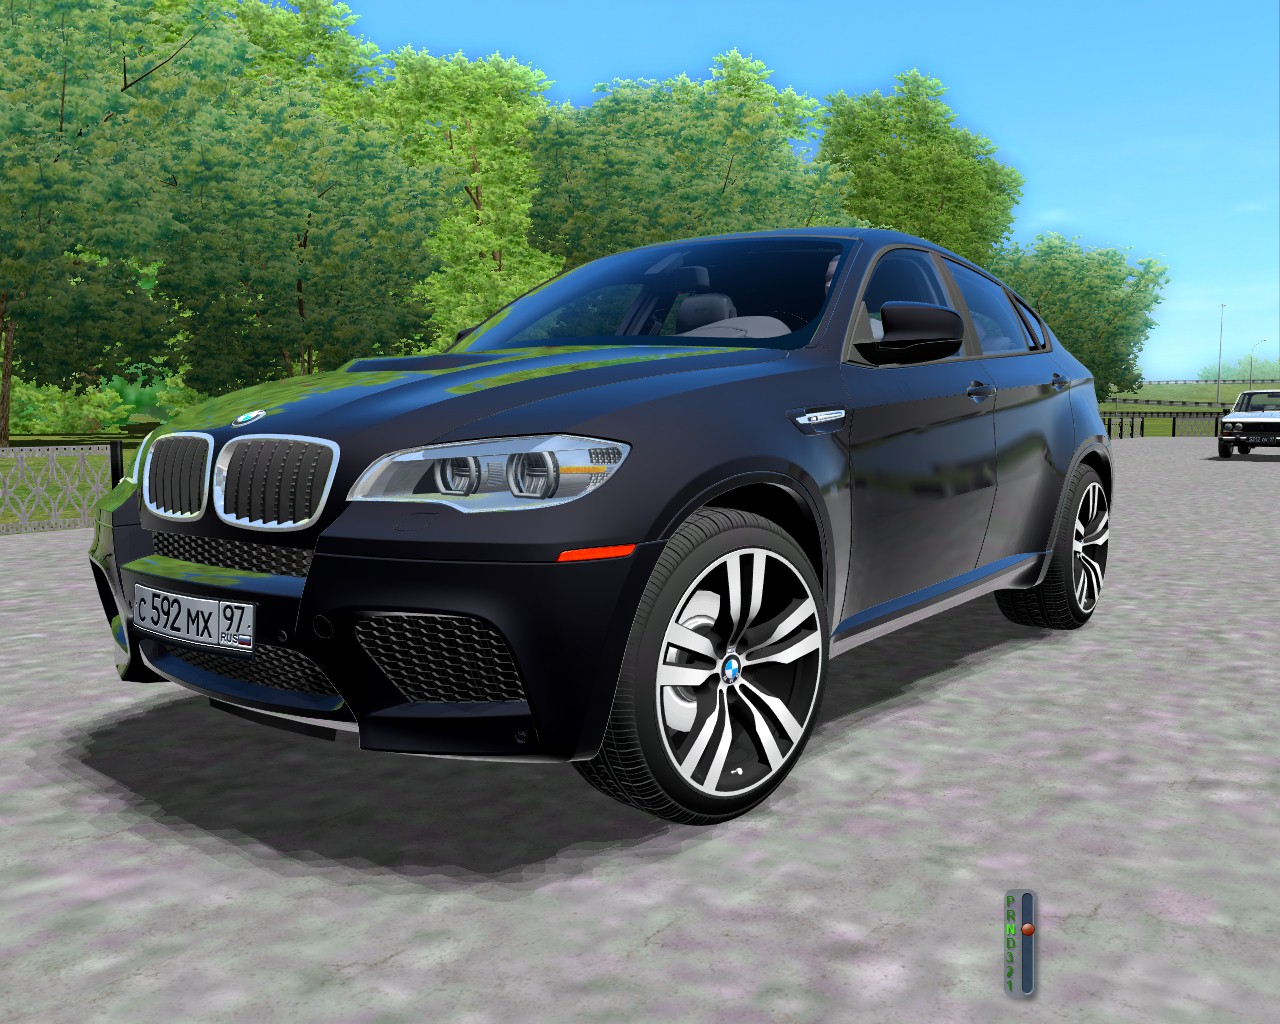 Новая версия 32. City car Driving BMW x6. BMW x5 City car Driving 1.5.9.2. BMW x7 40i Сити кар драйвинг. БМВ х5 Сити кар драйвинг.